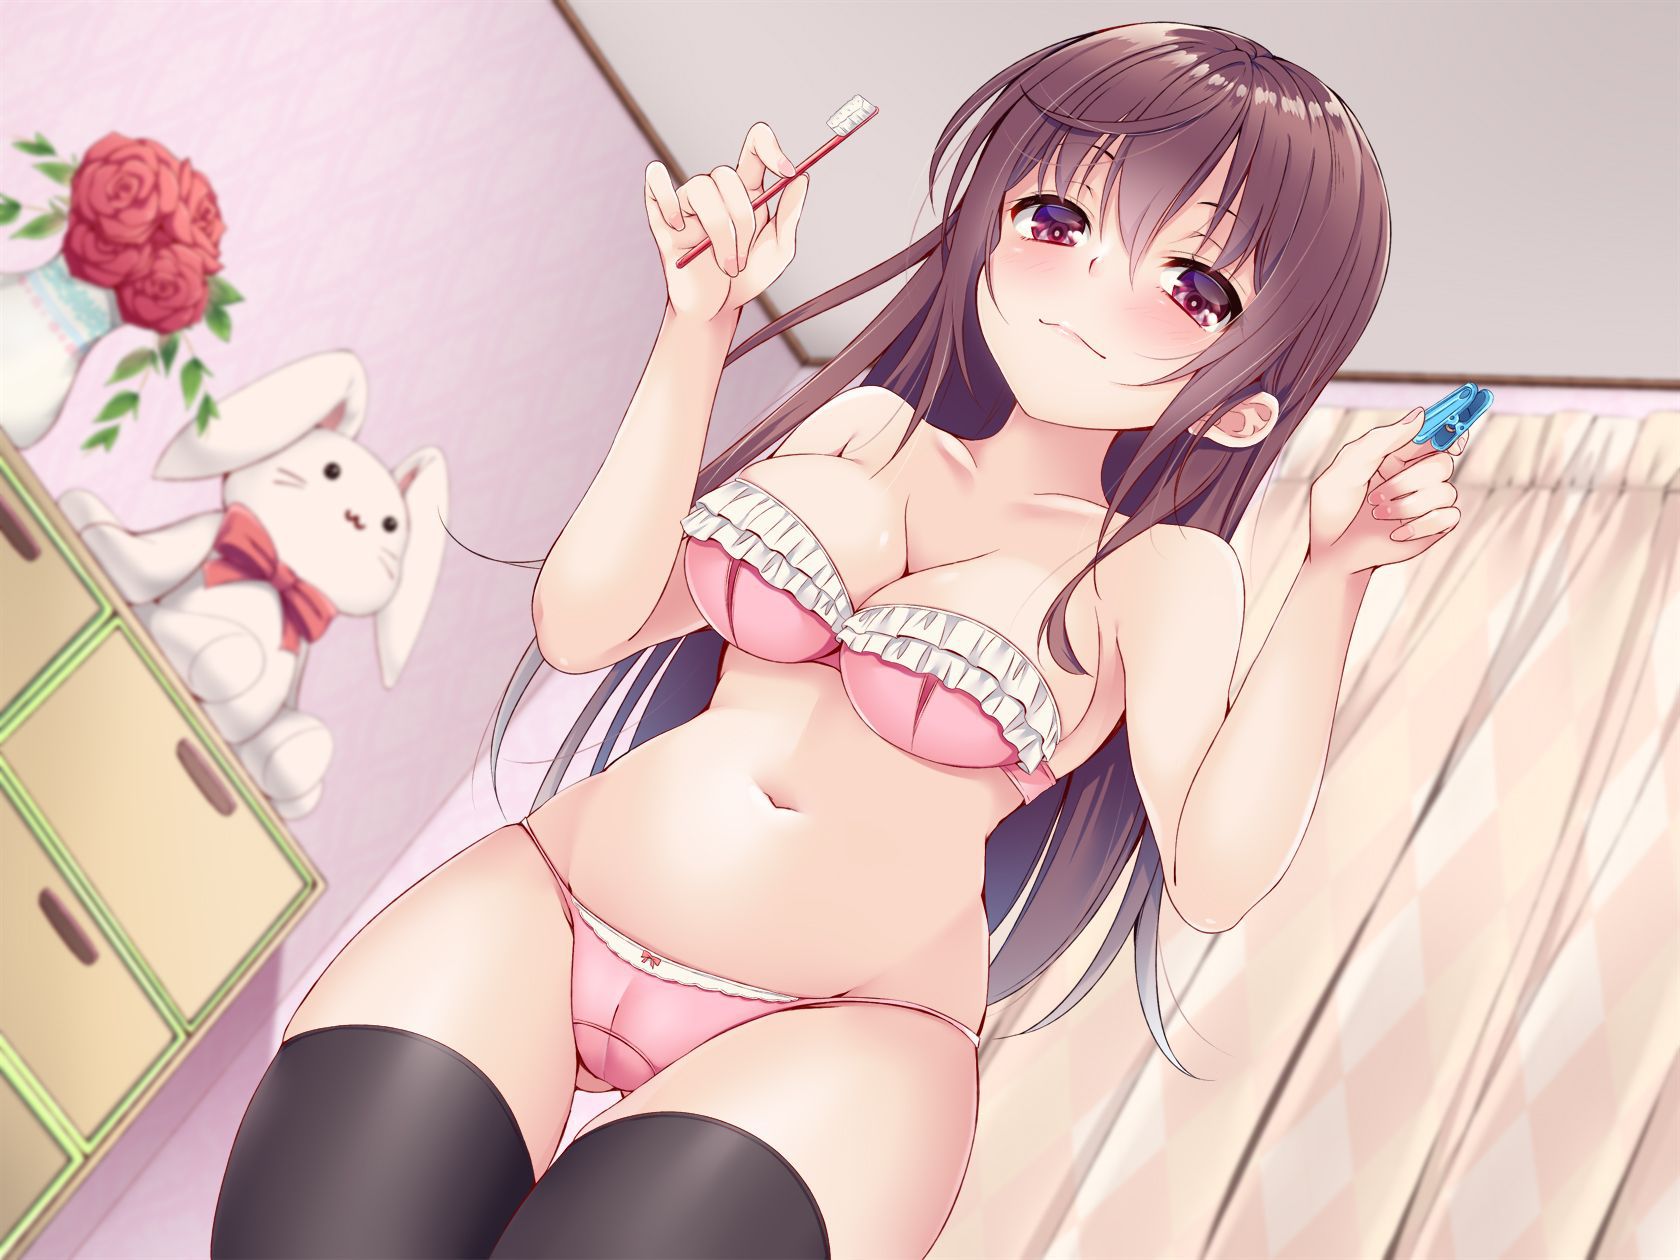 [Secondary ZIP] Rainbow image of Erokawaii girl who is in underwear 17